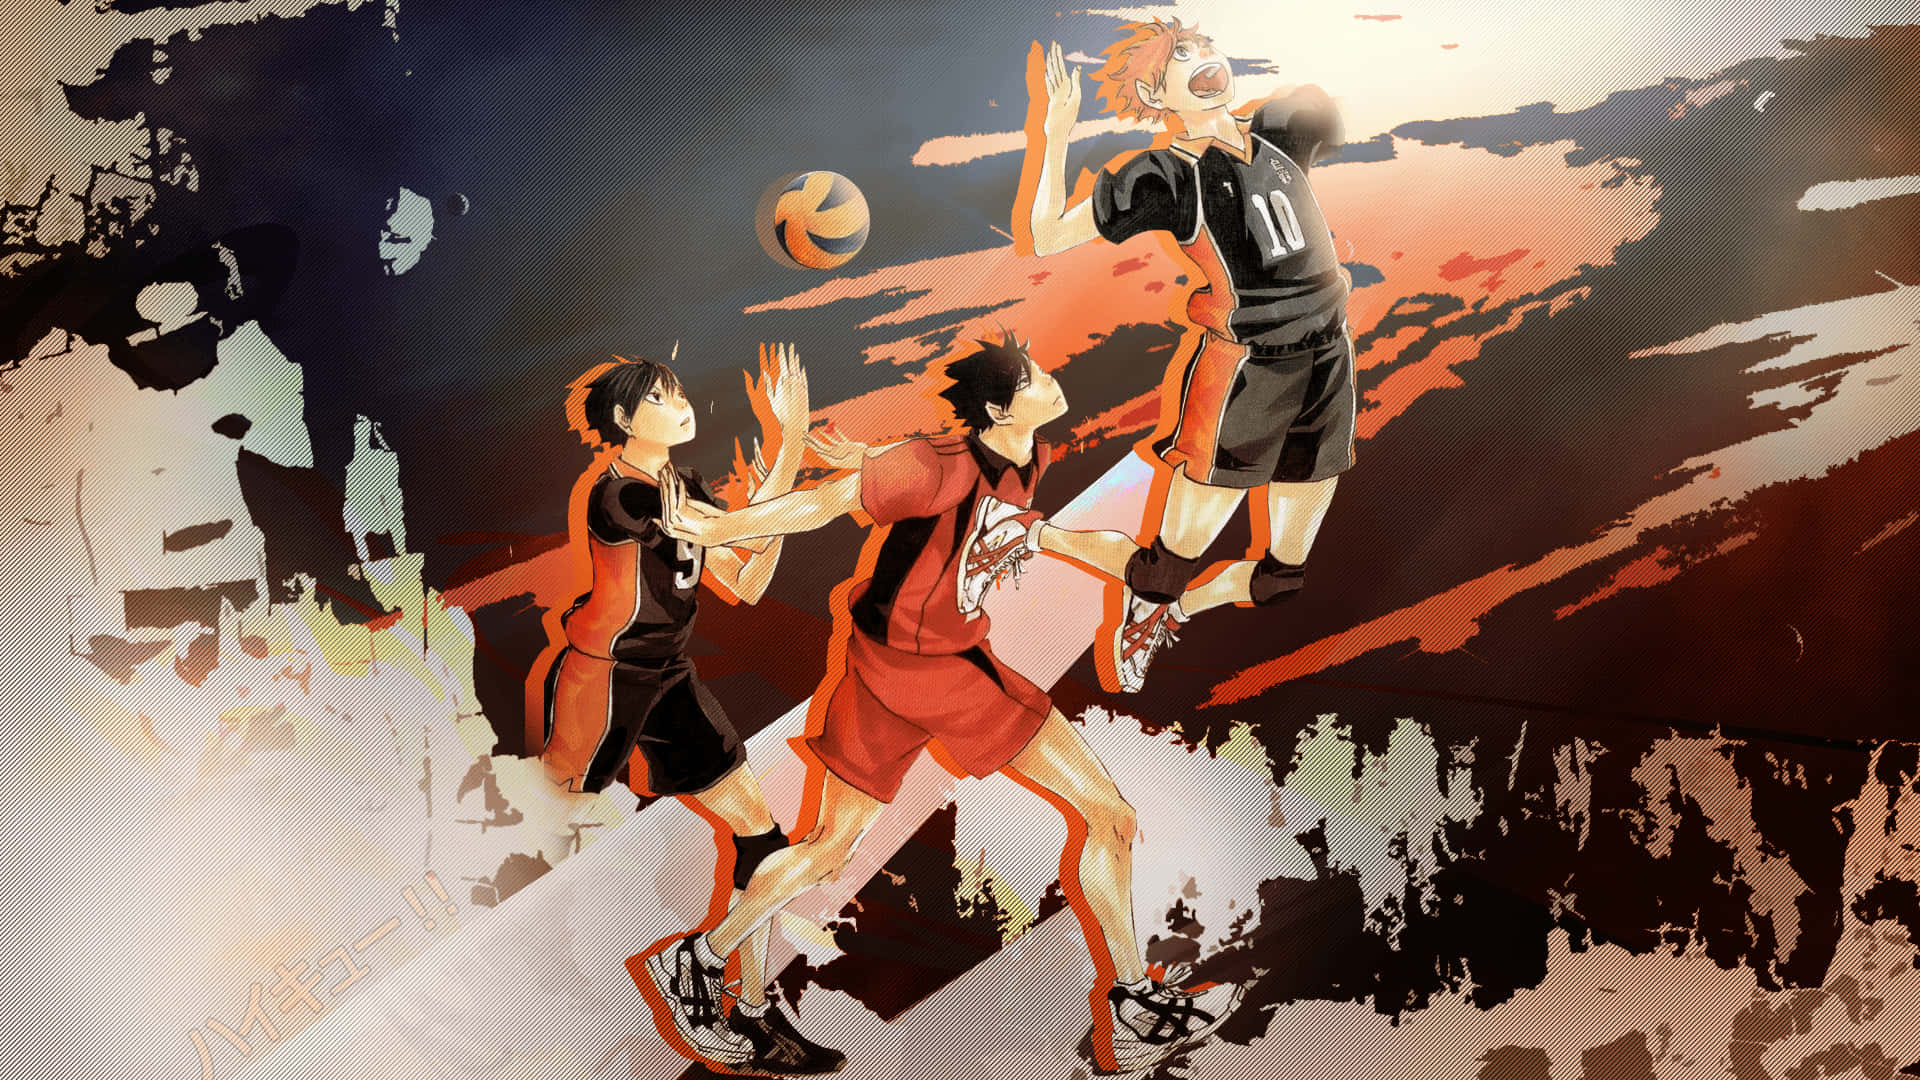 Einegruppe Von Menschen, Die Basketball In Einem Gemälde Spielen. Wallpaper